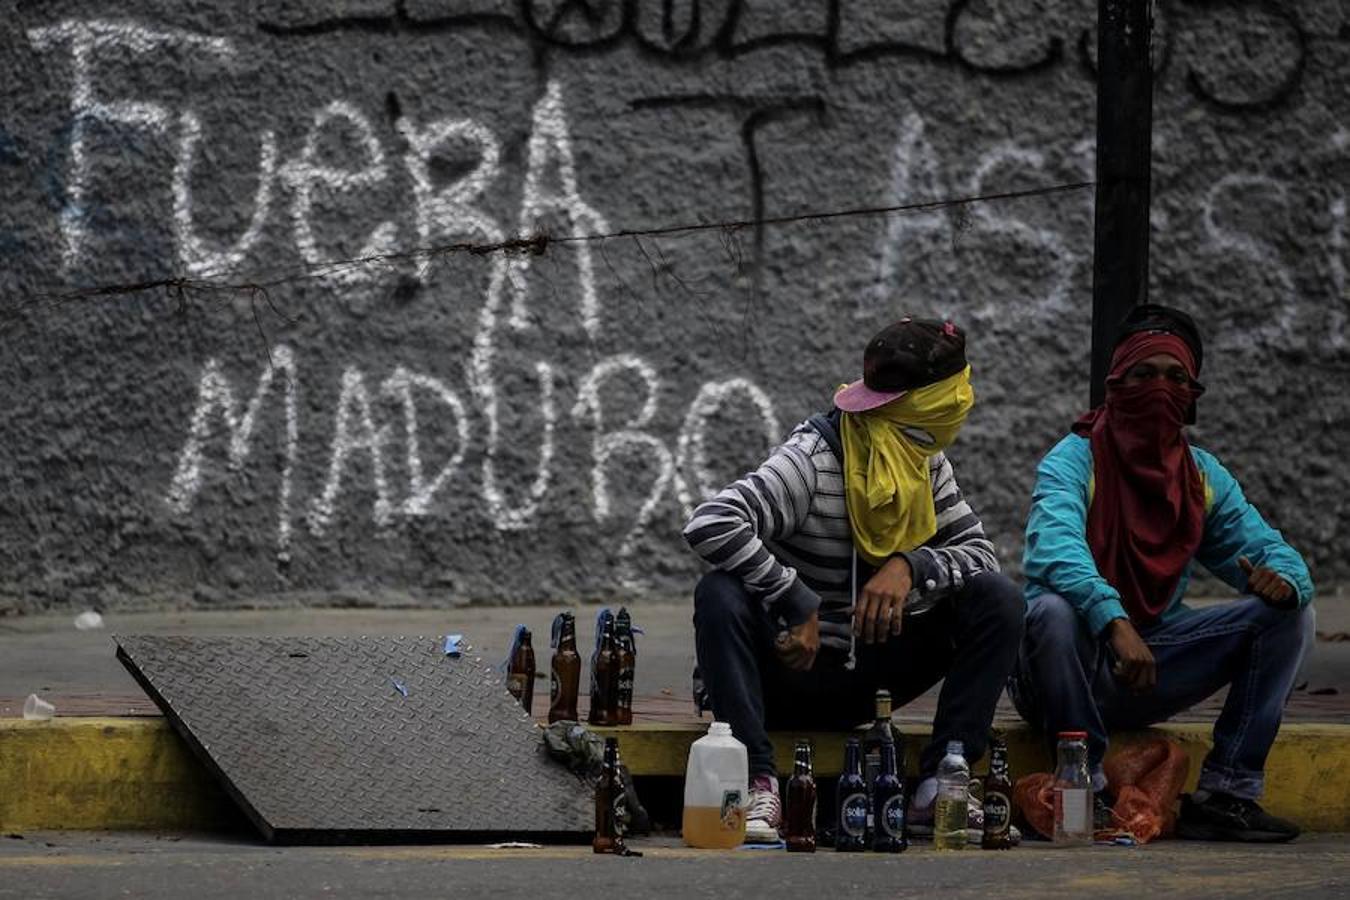 Caracas amaneció el miércoles parcialmente paralizada y con calles cerradas en varias zonas, especialmente en los principales feudos antichavistas en el este de la ciudad, mientras que el oeste marcha con relativa normalidad